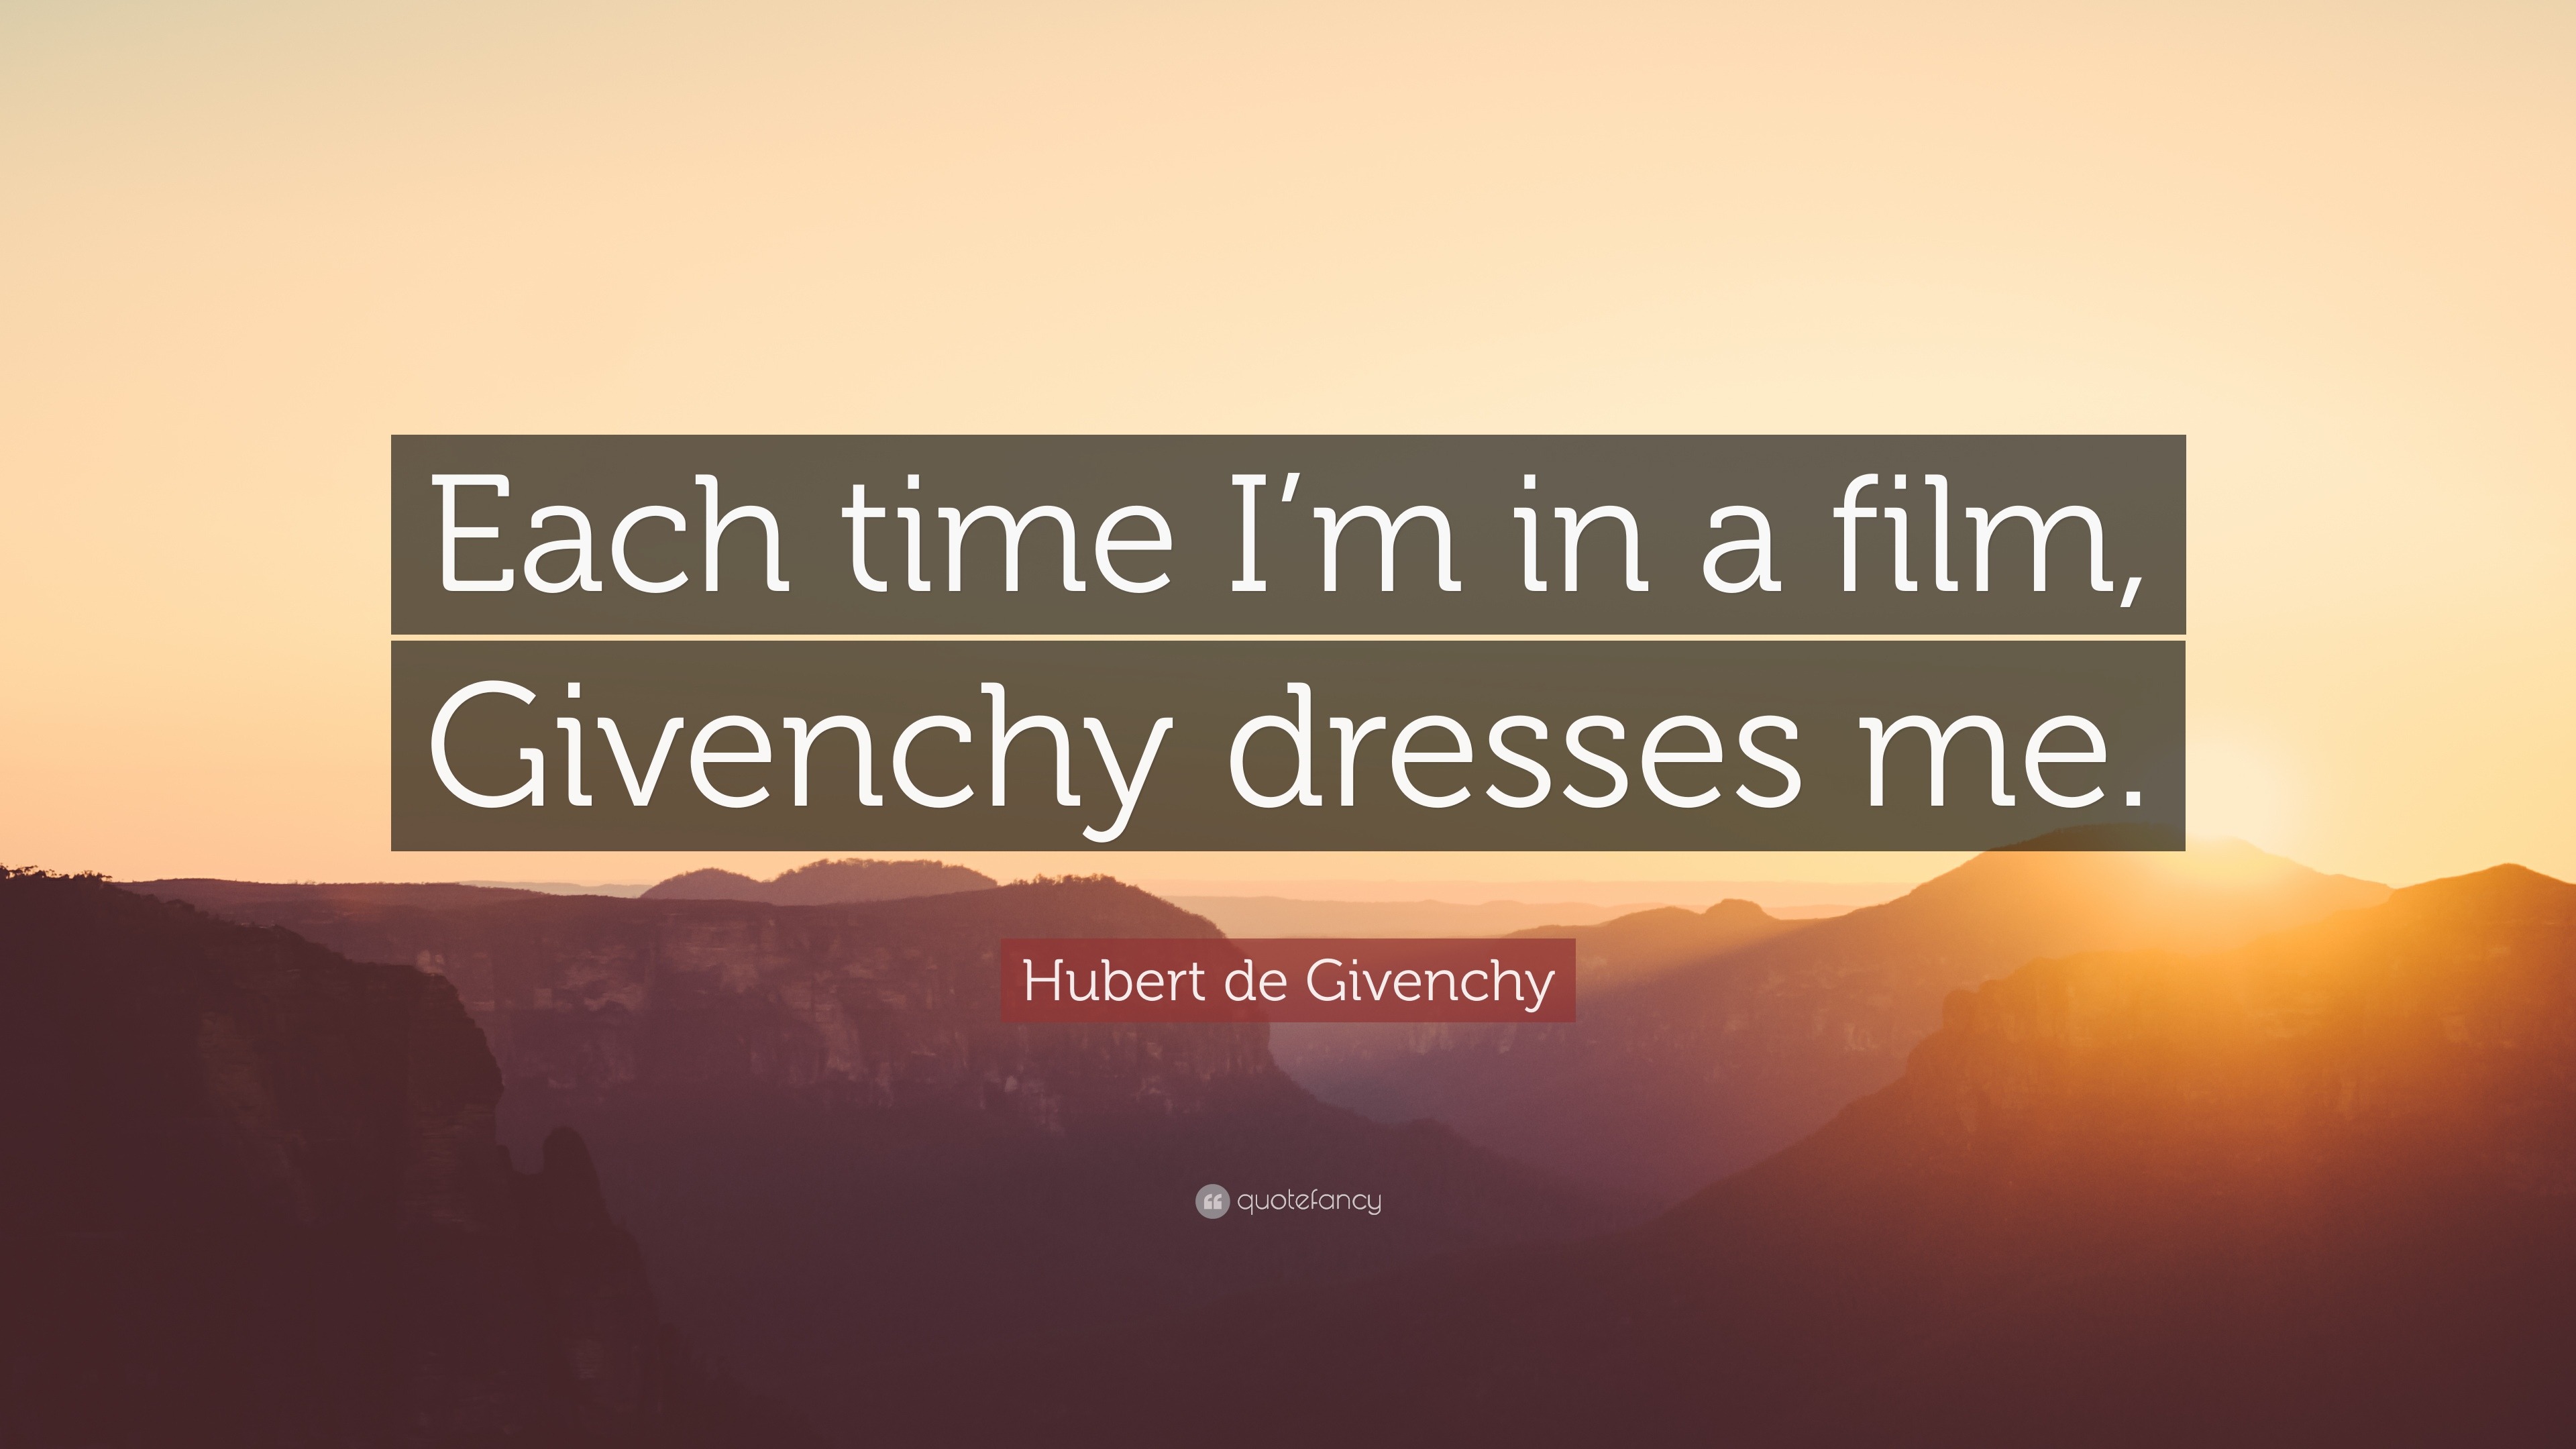 Top 6 Hubert de Givenchy Quotes (2023 Update) - Quotefancy